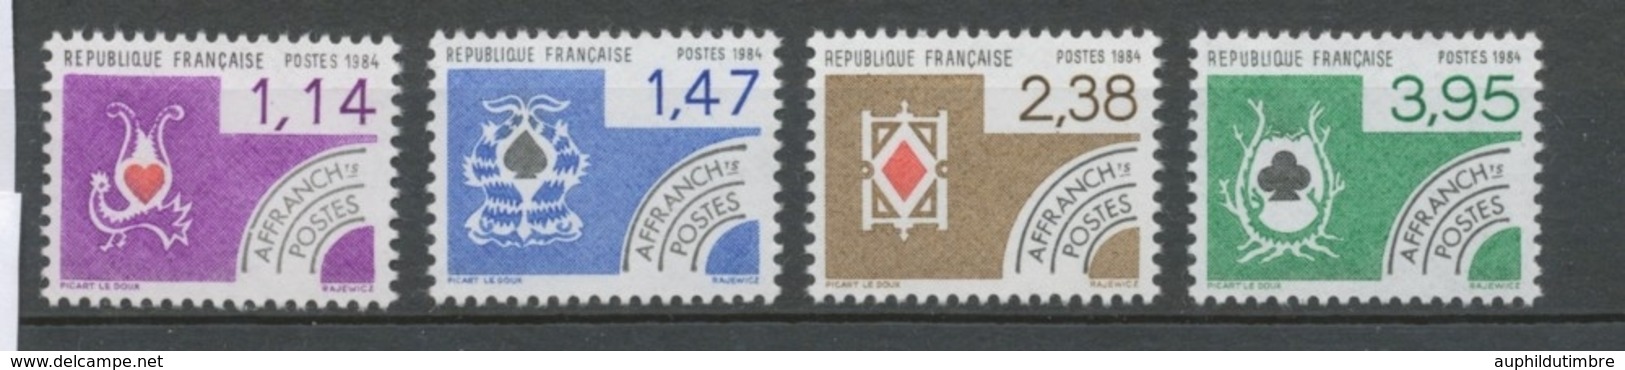 Préoblitérés N°182-185 Série Cartes à Jouer 1984 ZP182A - 1964-1988